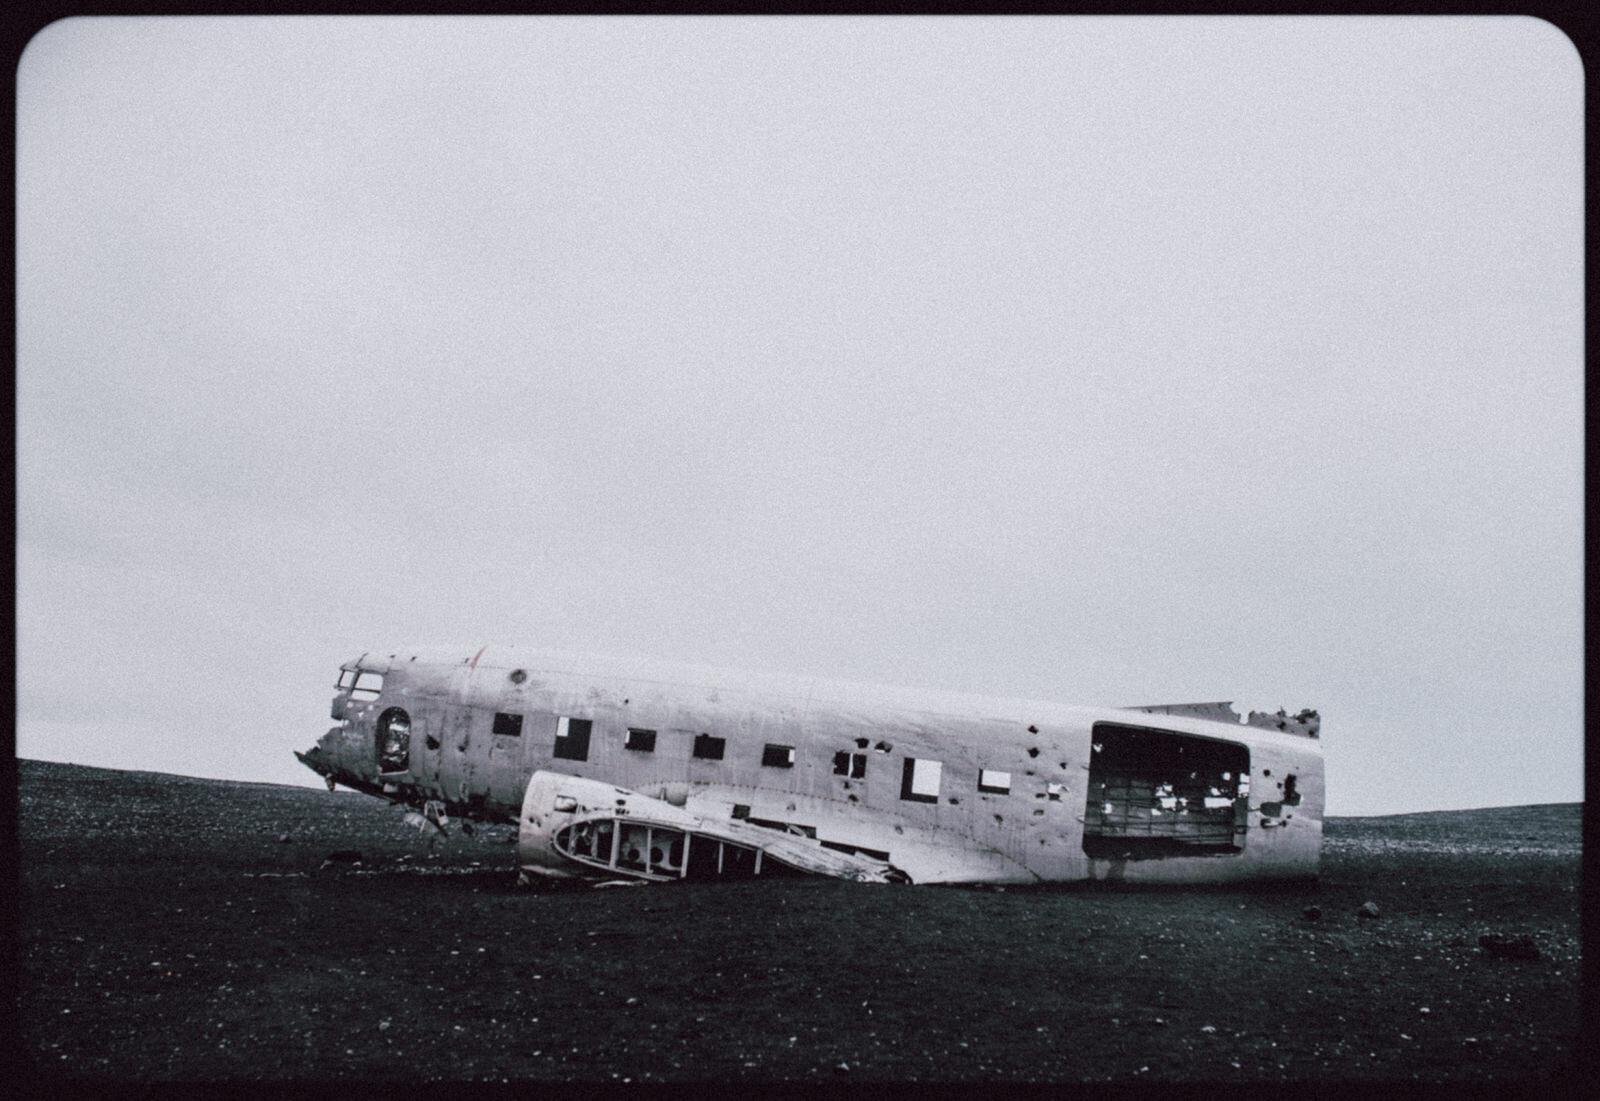  Xác chiếc máy bay vận tải DC-3 của hải quân Mỹ (hết nhiên liệu nên rơi ở đây năm 1973) / Sólheimasandur. Hồi năm năm trước có đường cho ô tô vào nhưng vì nhiều cá nhân vô ý thức đi off-road ngoài con đường cho phép nên chính phủ Iceland đã đóng cửa,